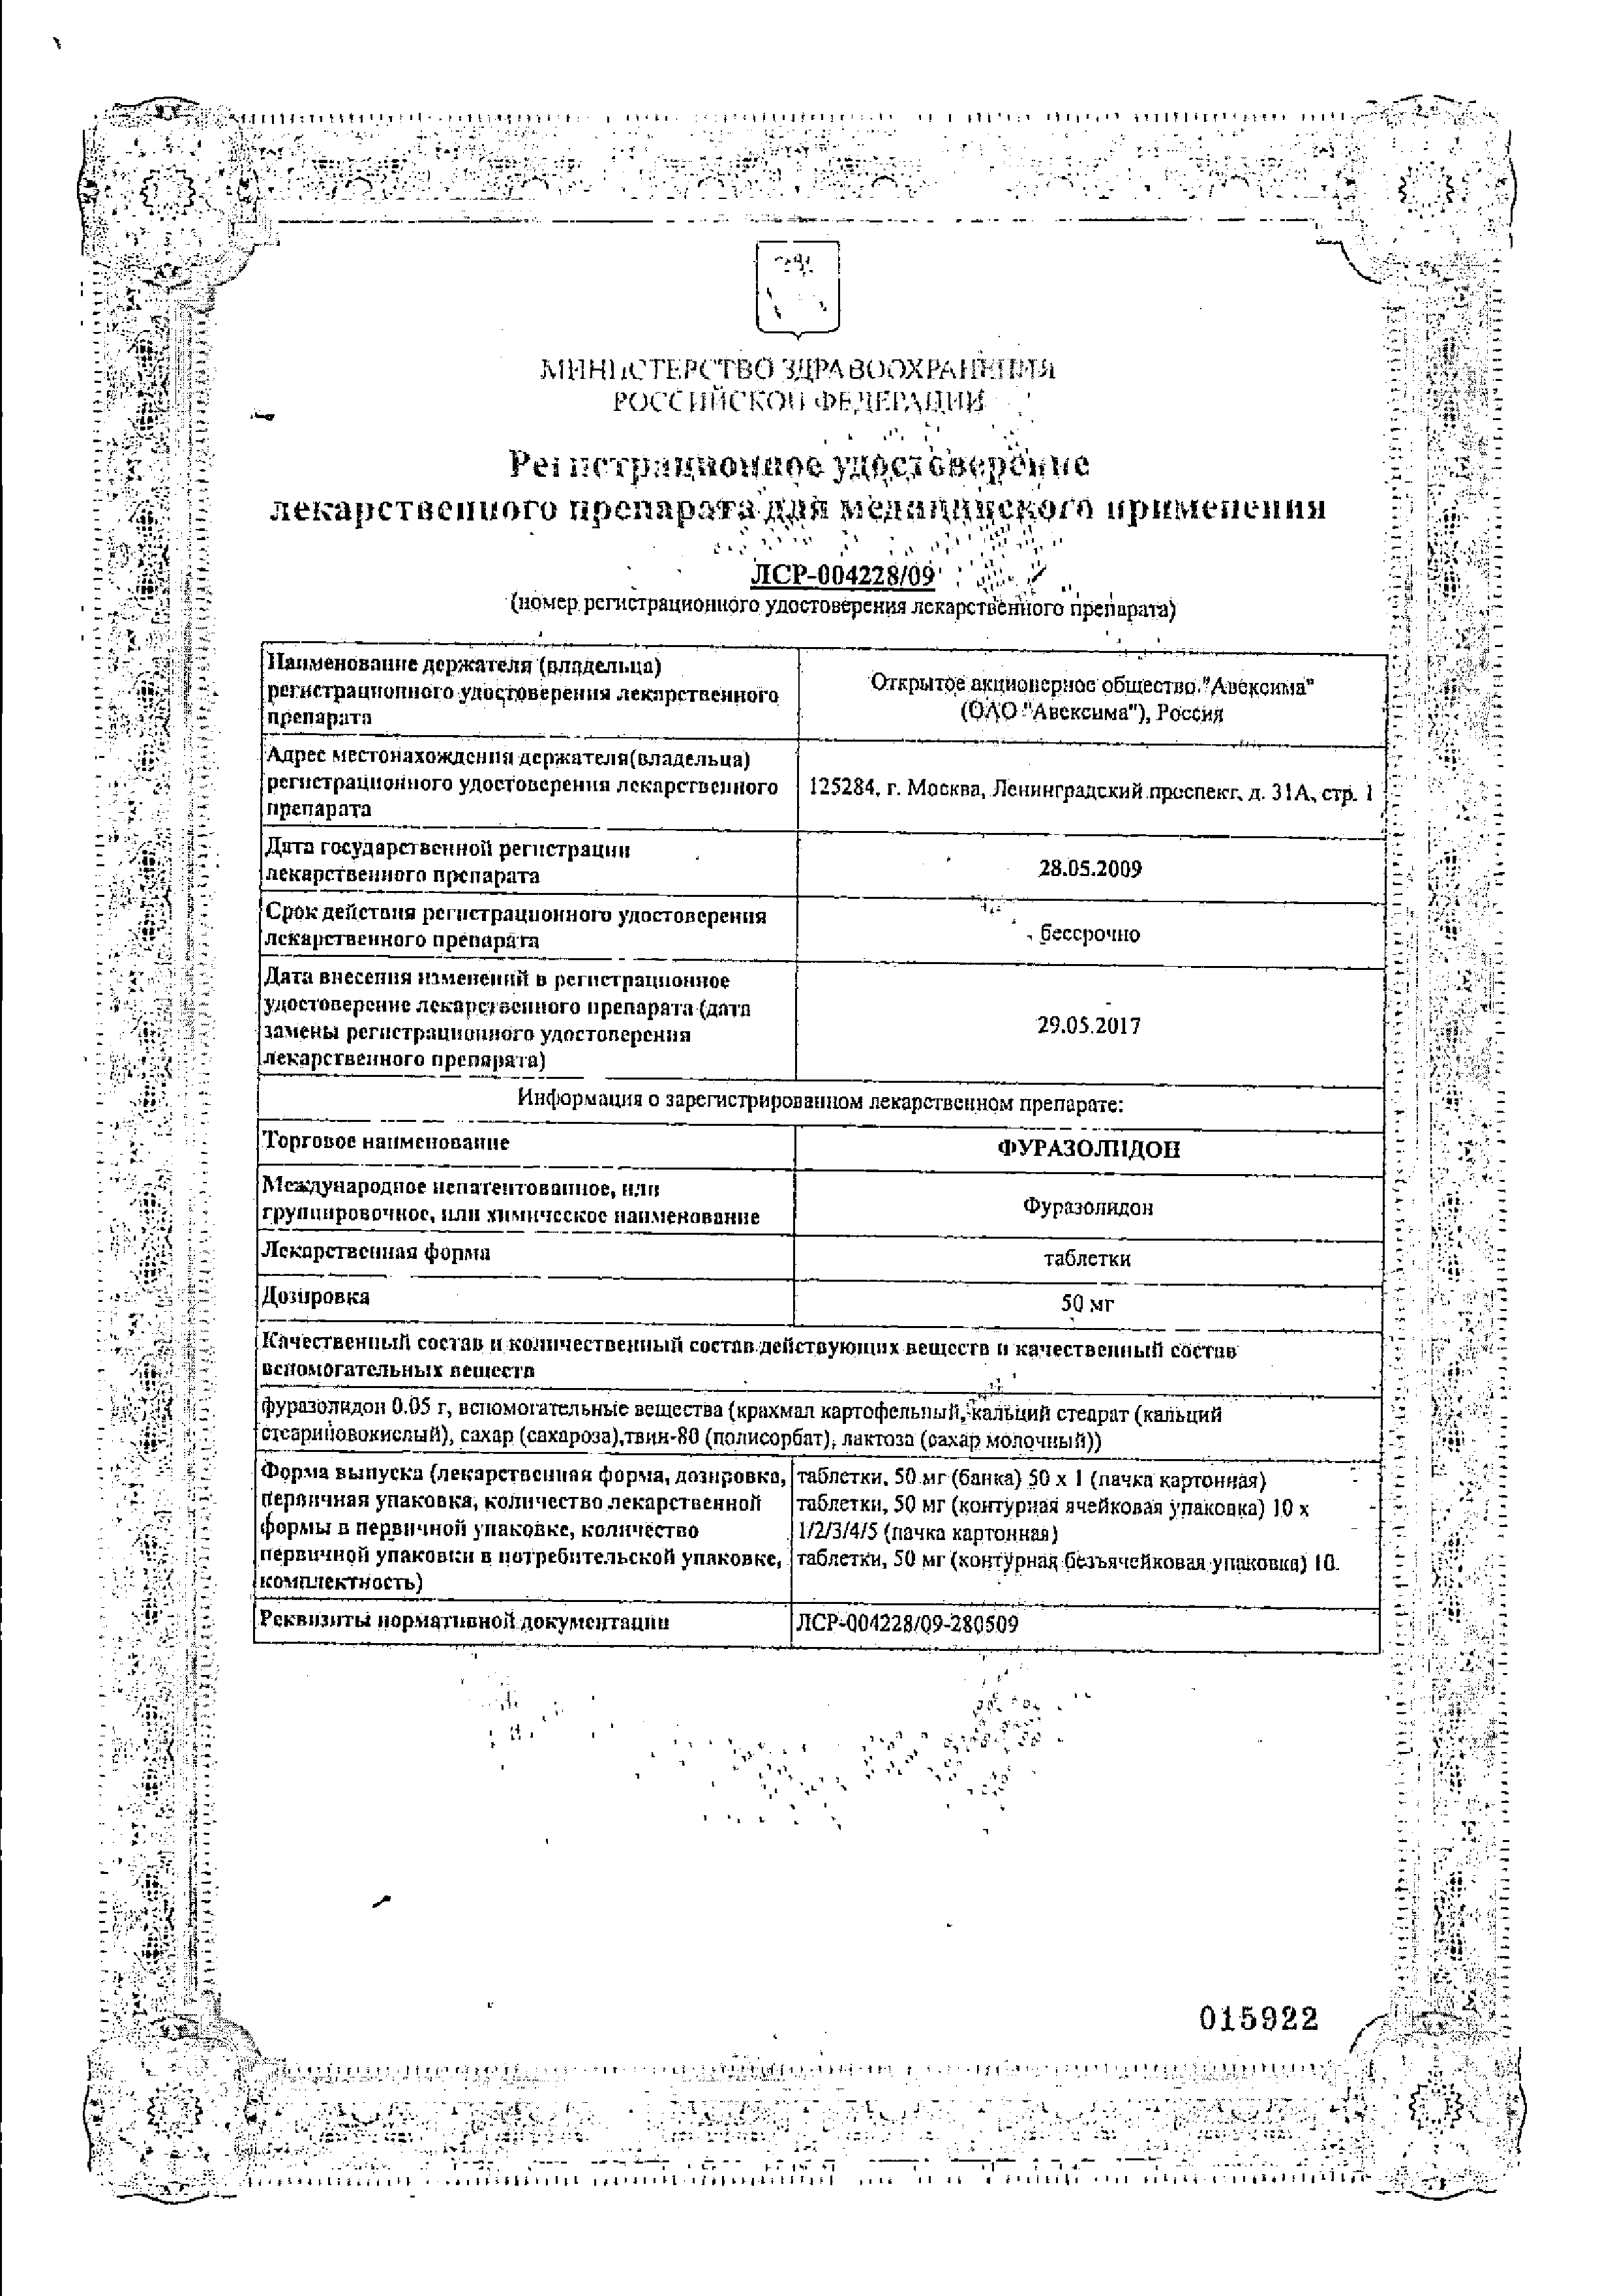 Фуразолидон сертификат